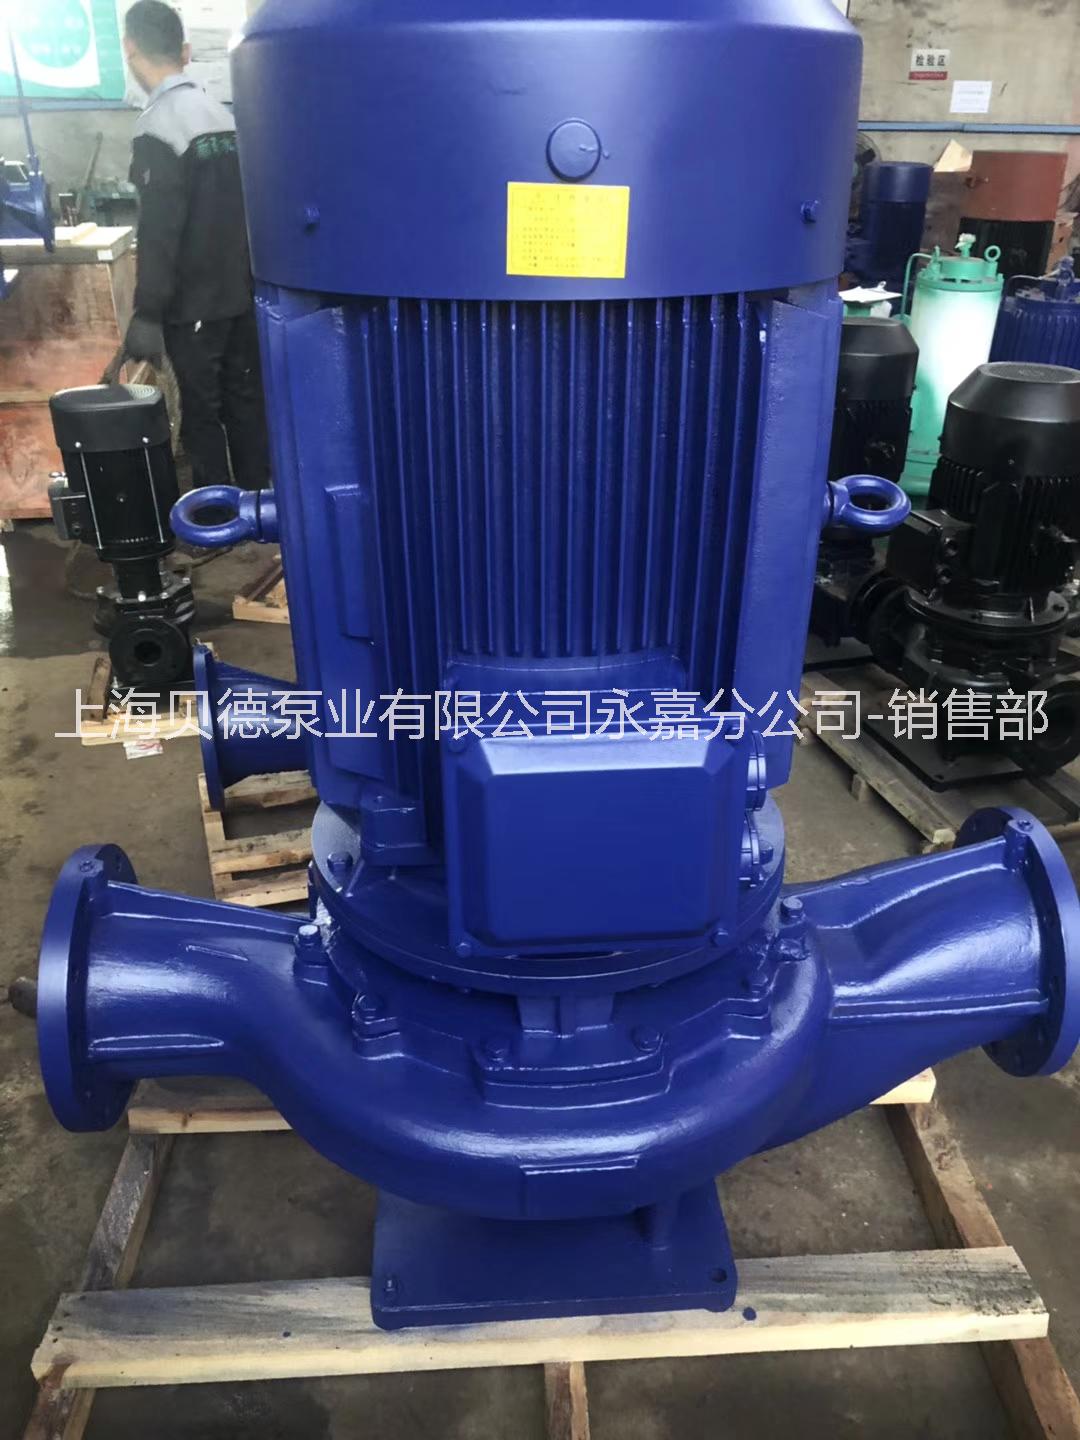 上海贝德泵业有限公司德州办事处ISG100-160  管道循环泵，自动单级单吸管道泵   IRG热水管道泵